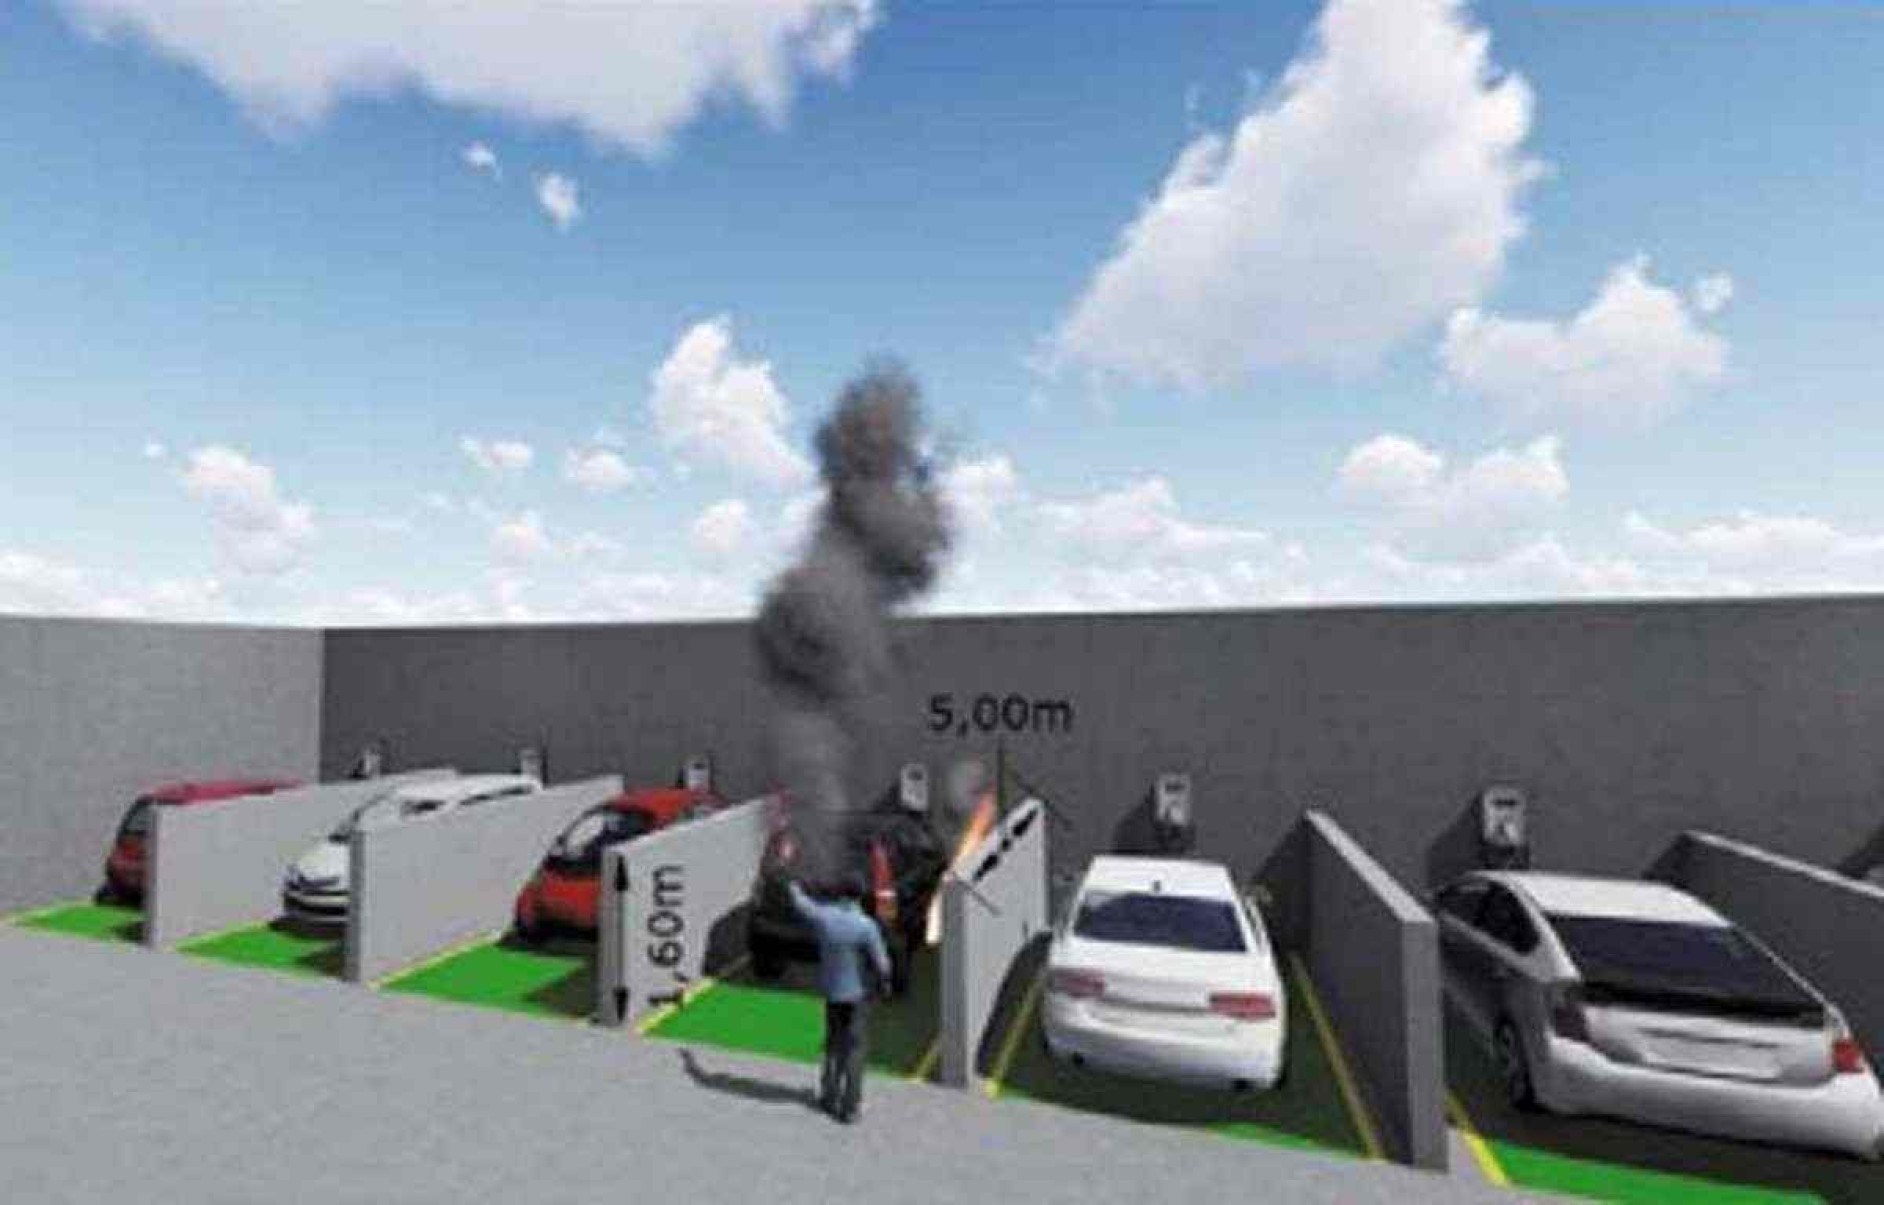 Desenho de carros elétricos em uma estação de carregamento com paredes corta-fogo entre eles